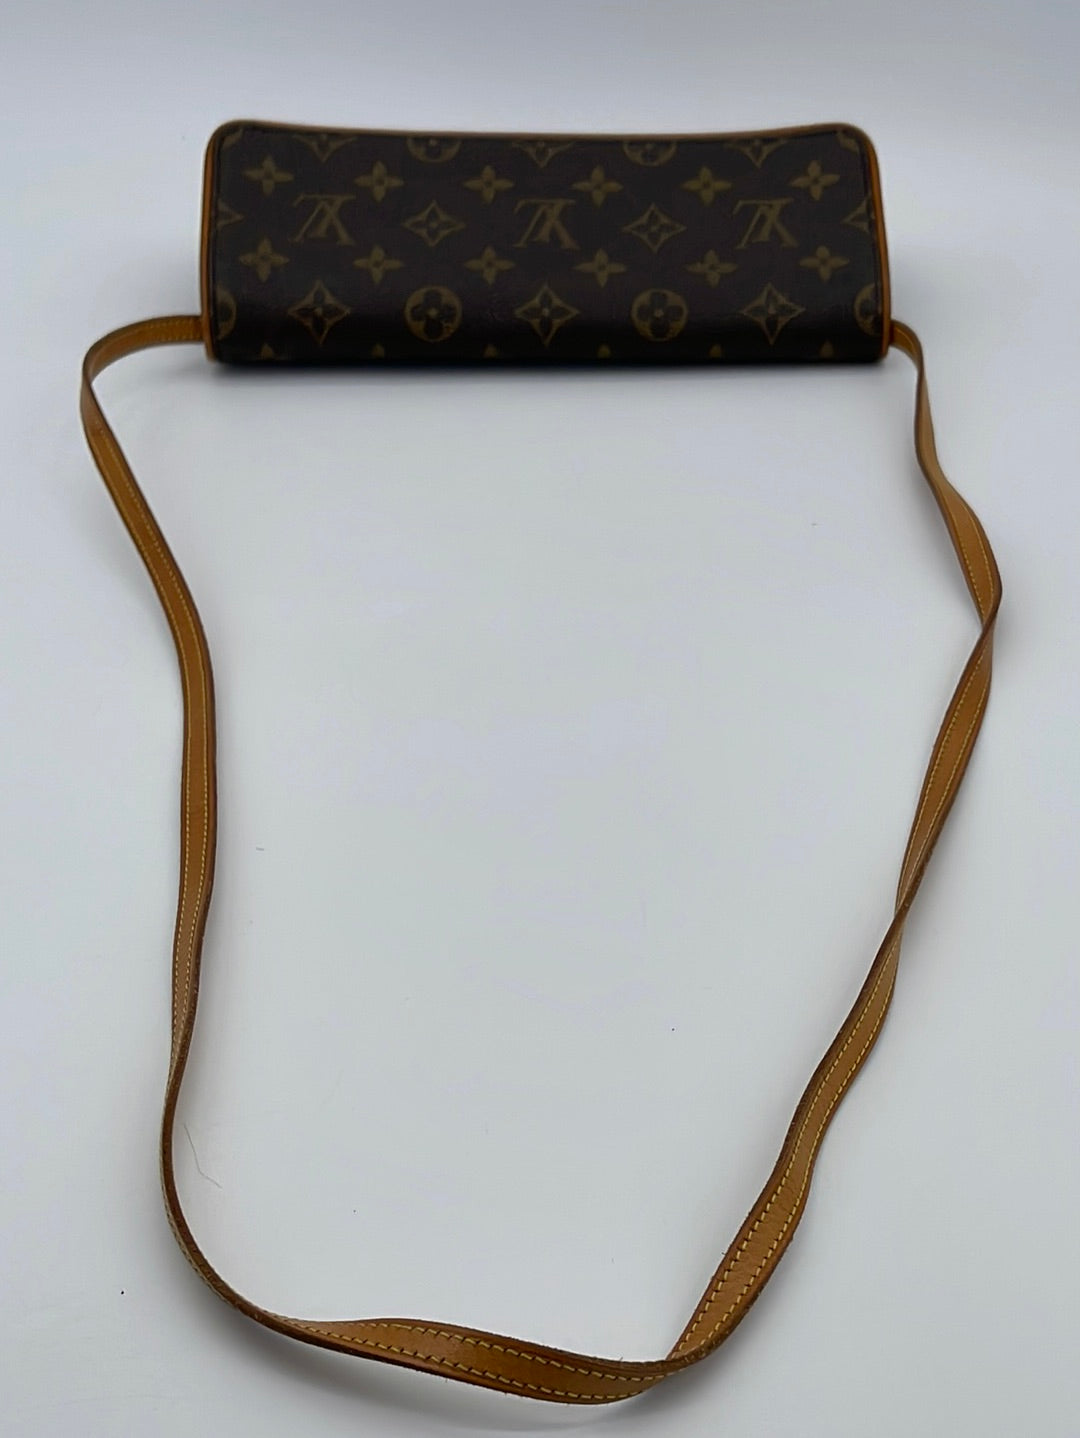 Brown Louis Vuitton Monogram Pochette Twin GM Crossbody Bag, Louis Vuitton  2008 pre-owned Croissant top-handle bag